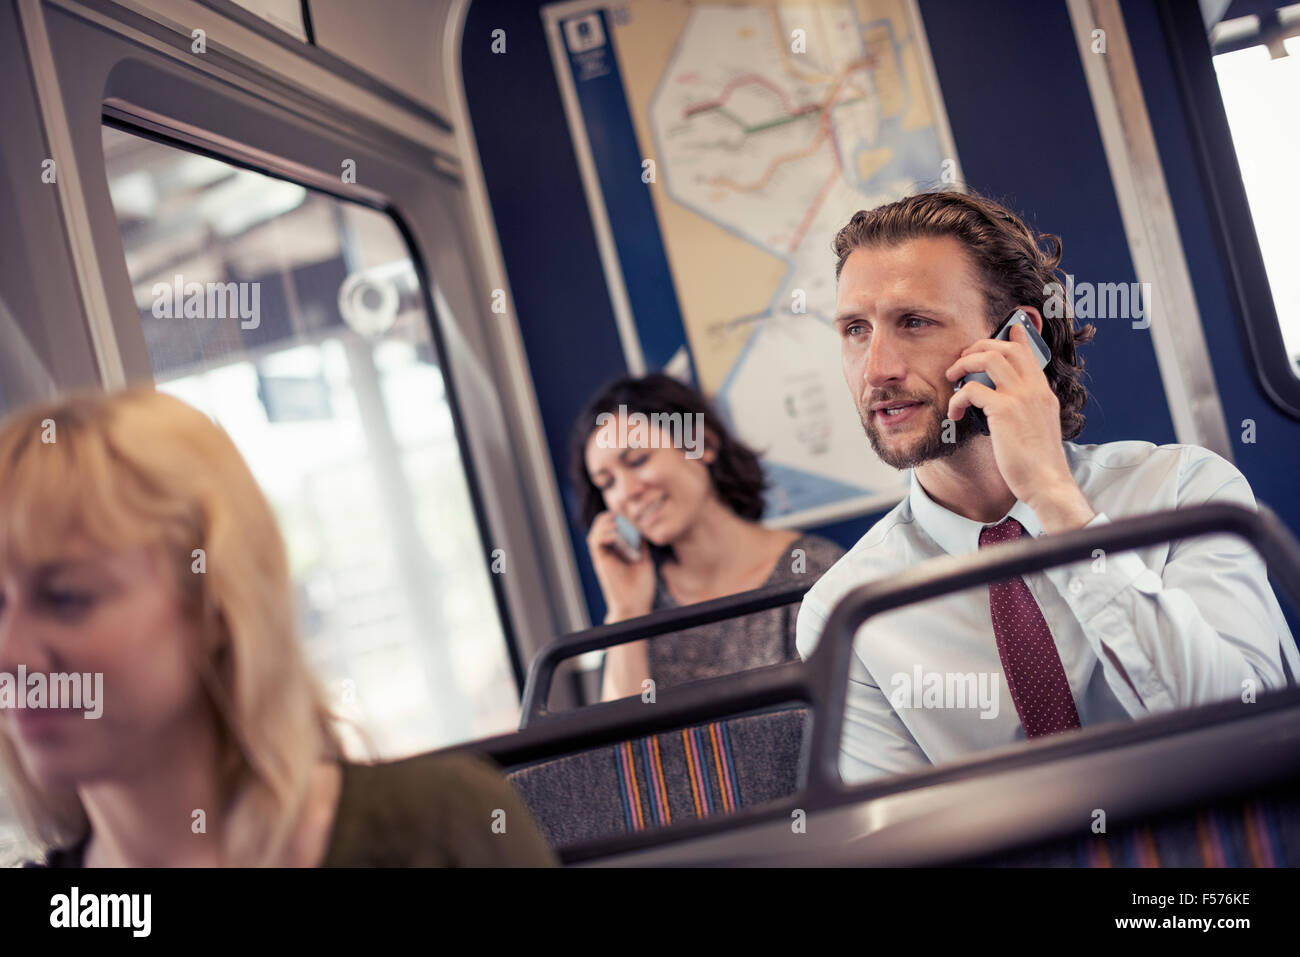 Trois personnes dans un bus, deux de parler sur leur téléphone cellulaire Banque D'Images